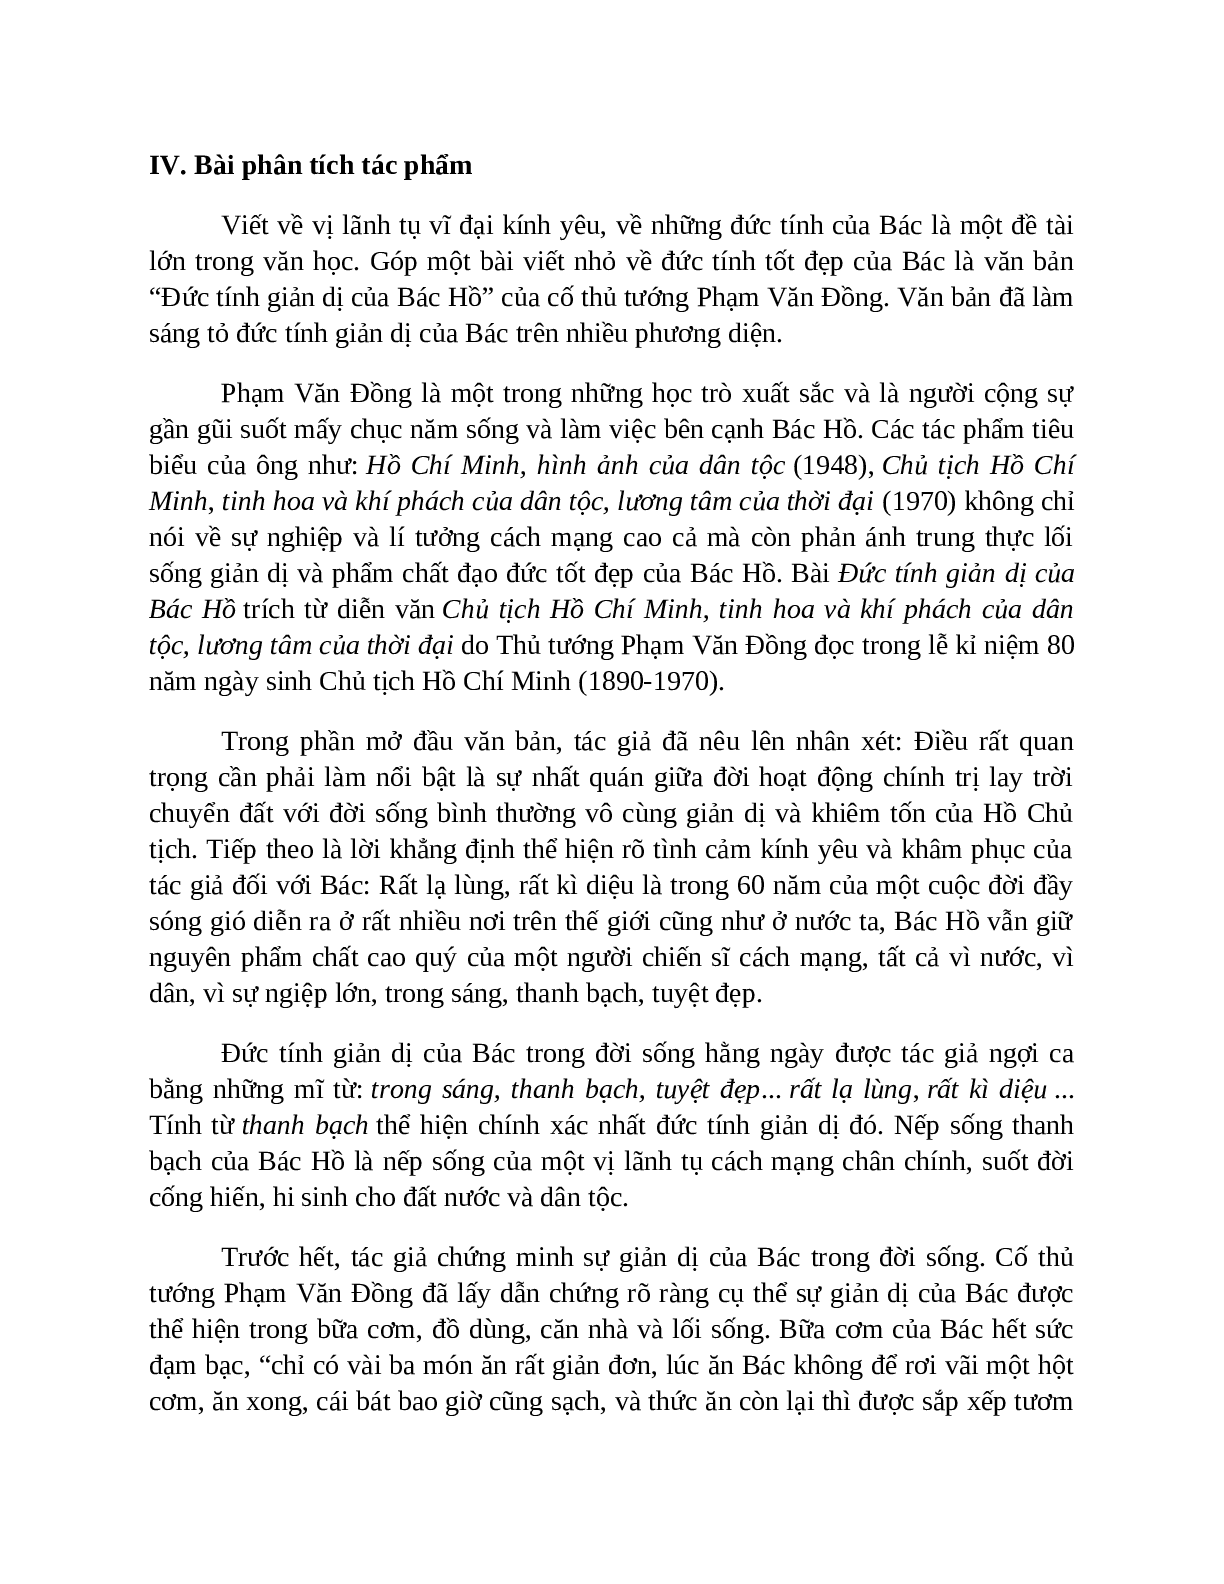 Sơ đồ tư duy bài Đức tính giản dị của Bác Hồ dễ nhớ, ngắn nhất - Ngữ văn lớp 7 (trang 5)